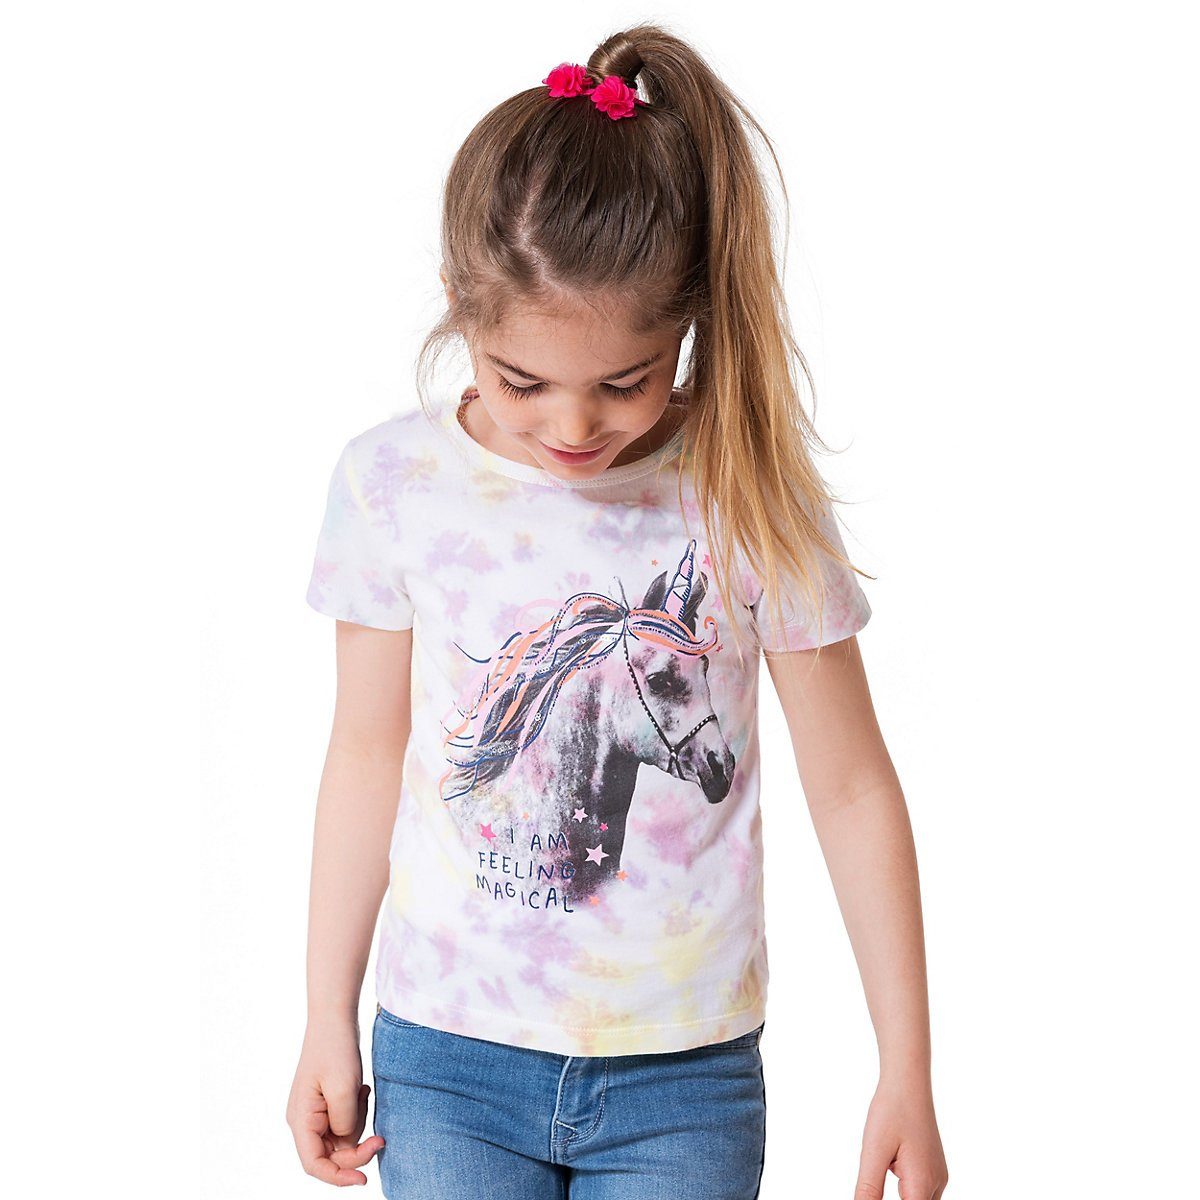 Kinder Kids (Gr. 92 -146) MyToys-COLLECTION T-Shirt T-Shirt für Mädchen von ZAB kids